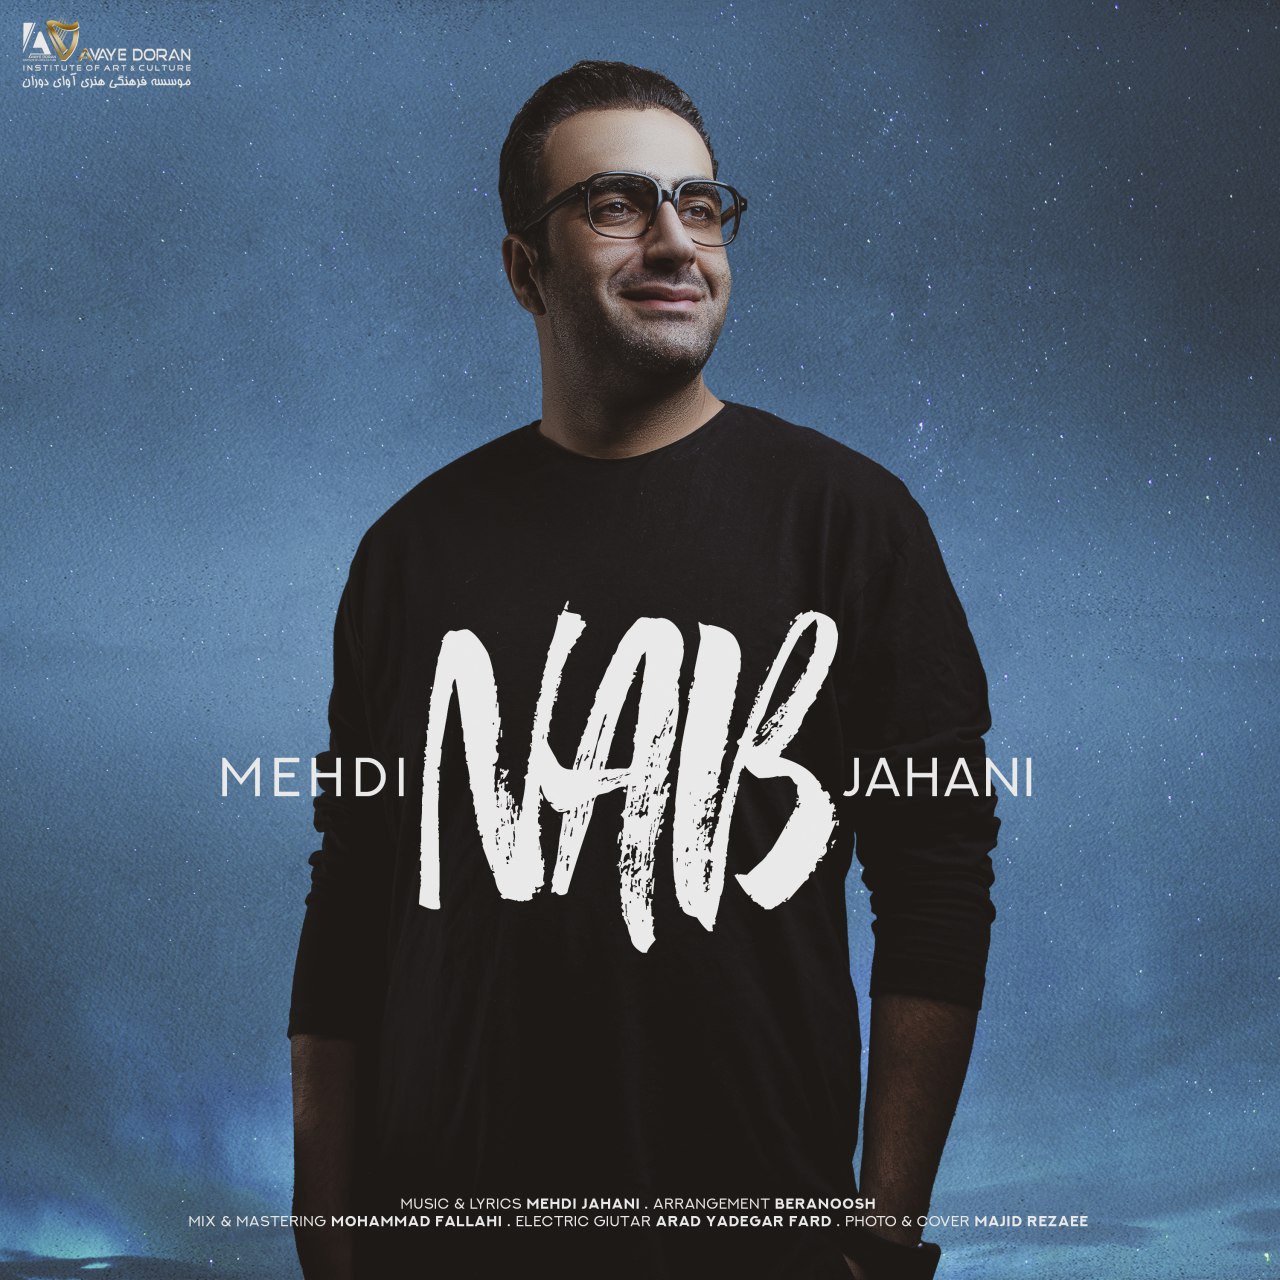  دانلود آهنگ جدید مهدی جهانی - ناب | Download New Music By Mehdi Jahani - Nab